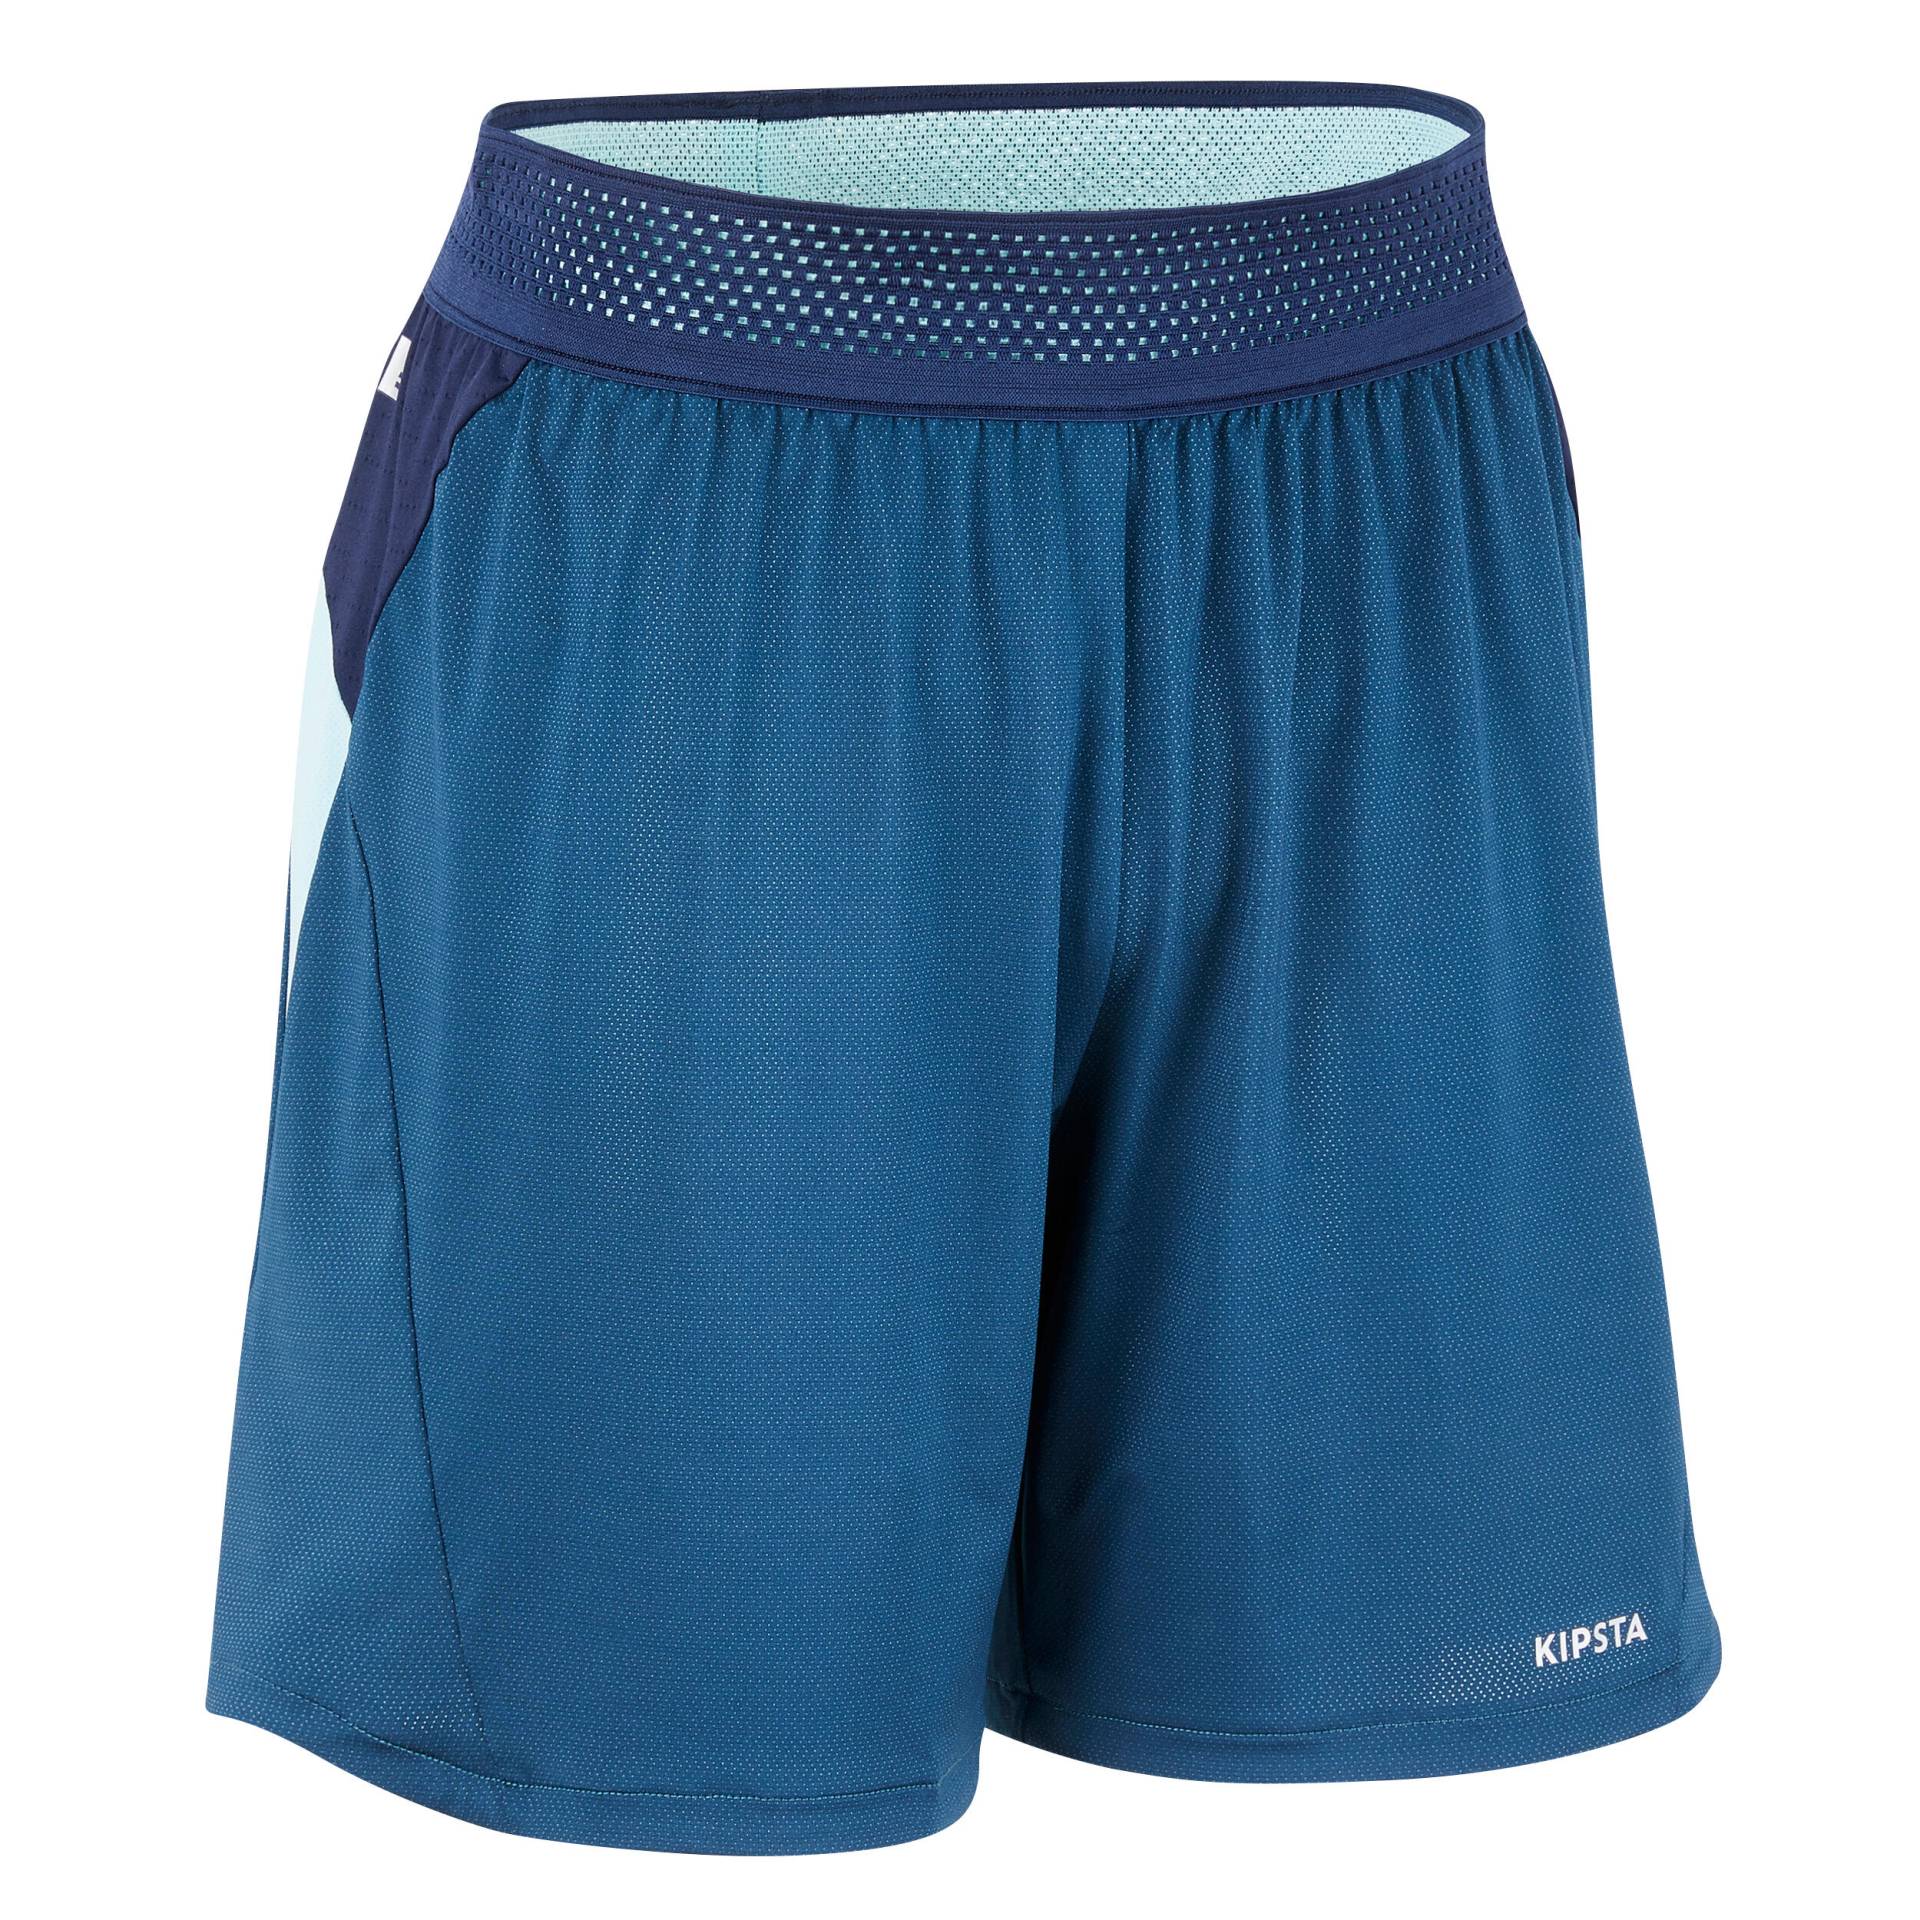 Damen Fussball Shorts - blau von KIPSTA